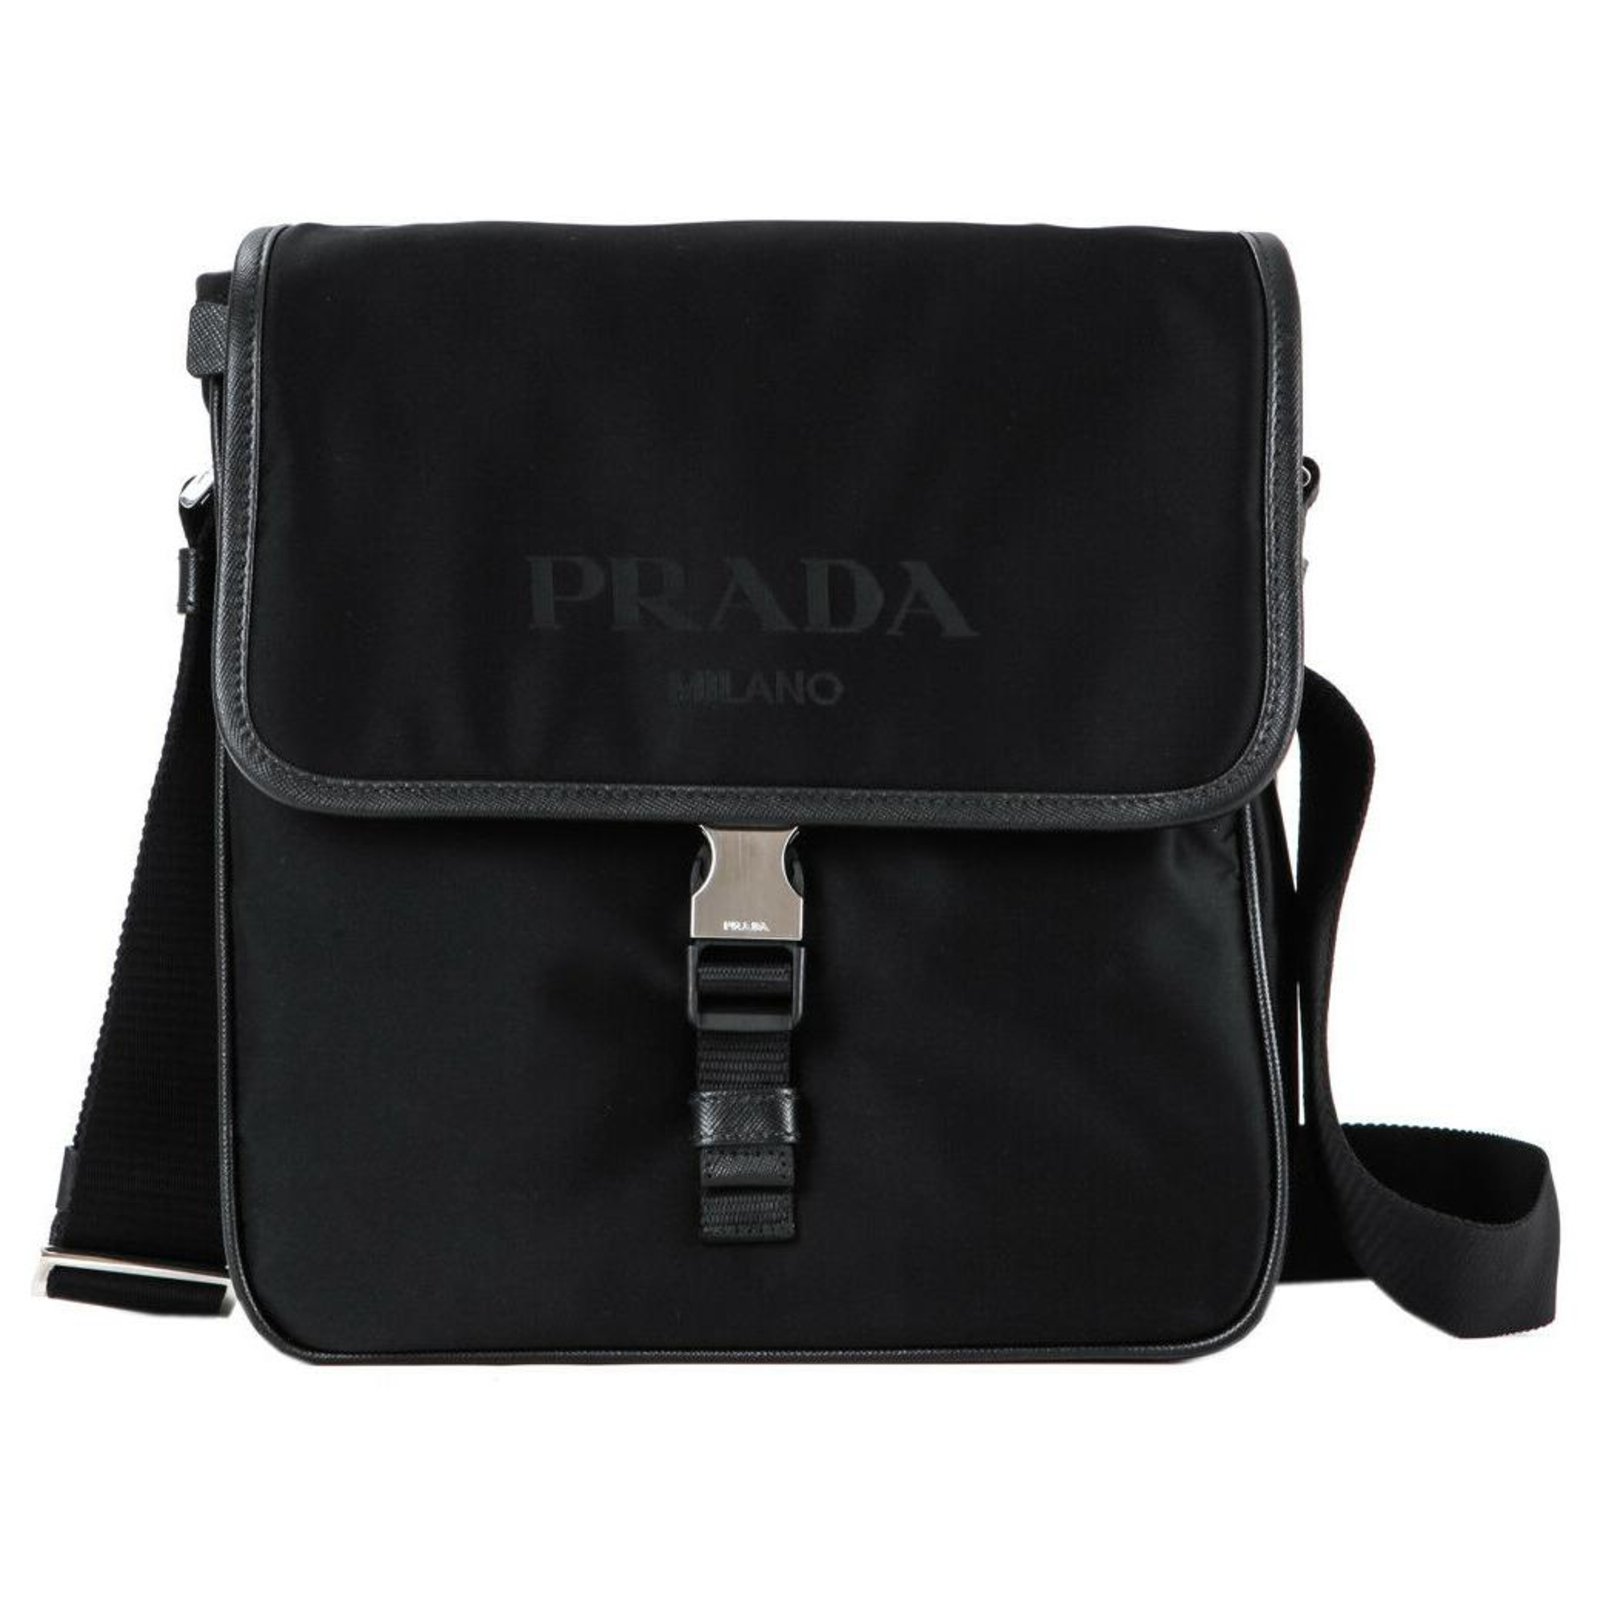 Prada Men's Crossbody Bags - Black